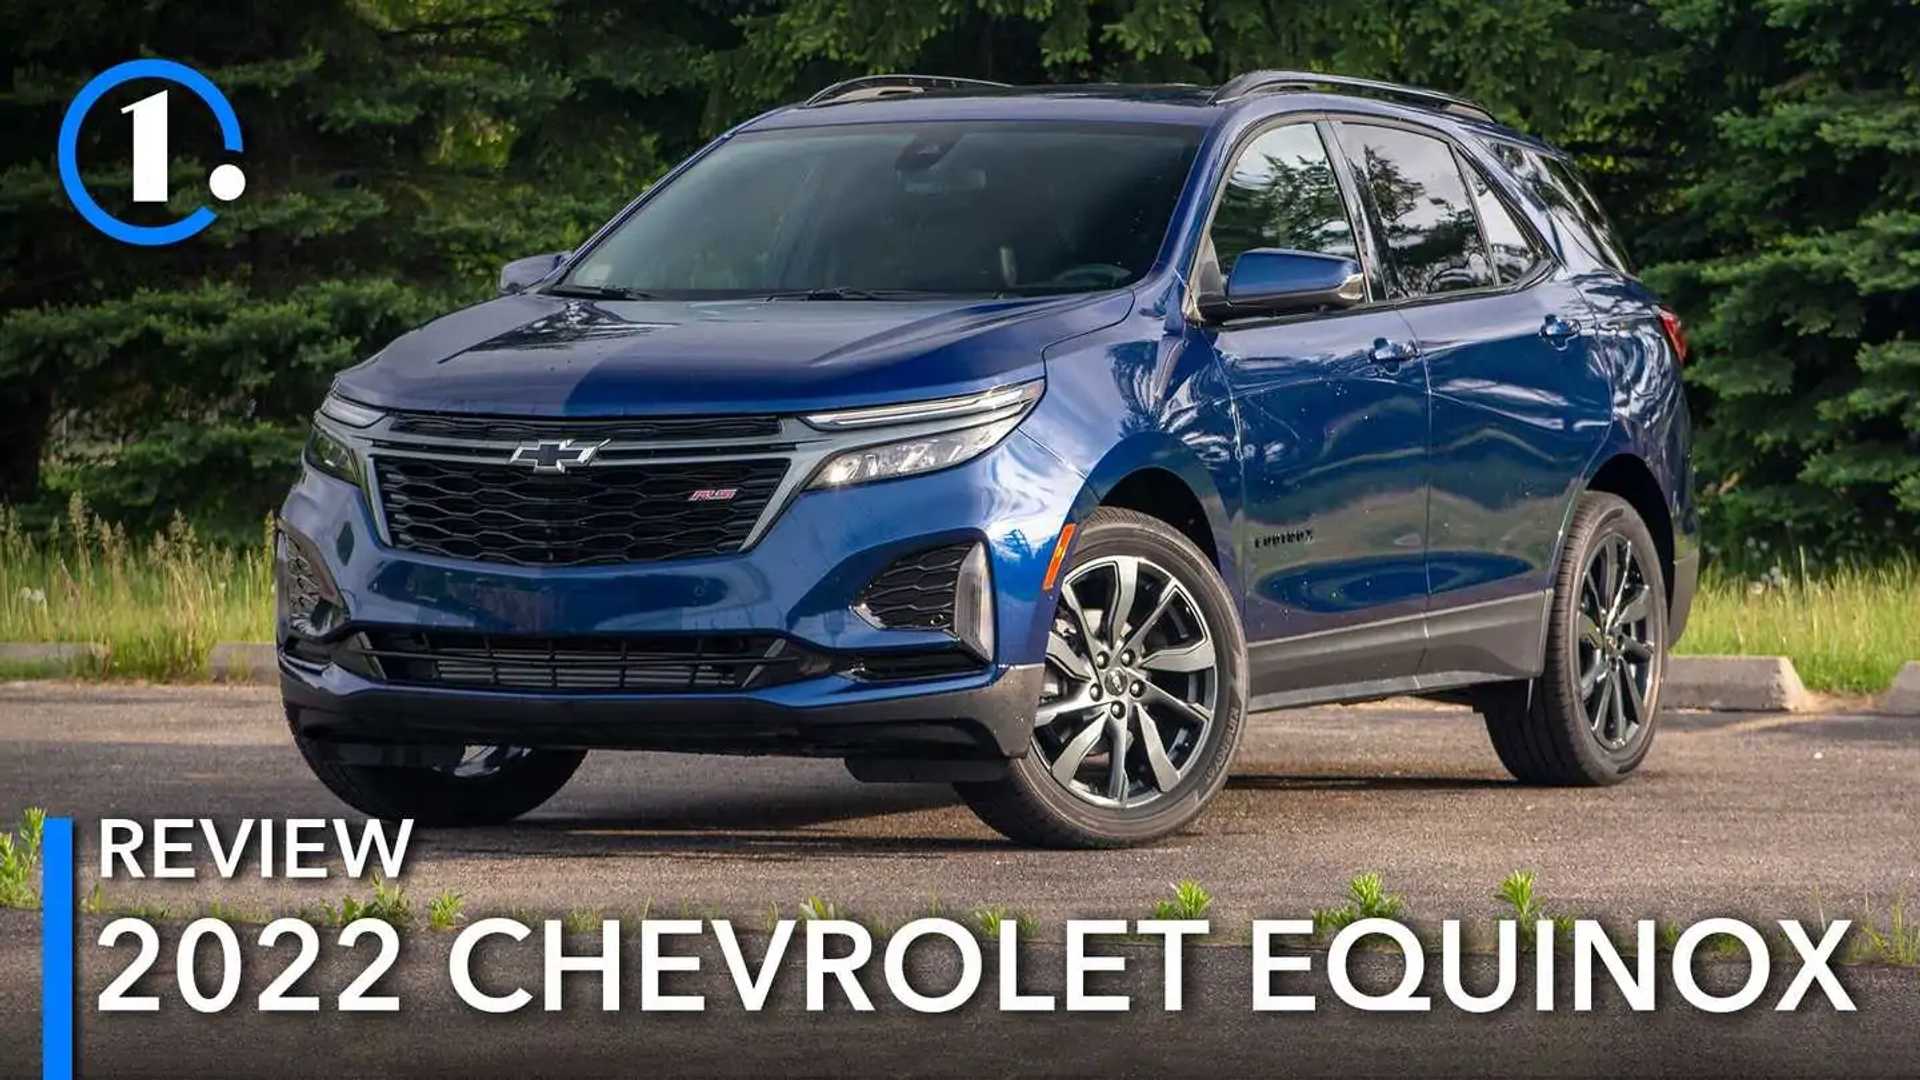 2022 Chevrolet Equinox Review: Dutifully Serving | Motor1.com